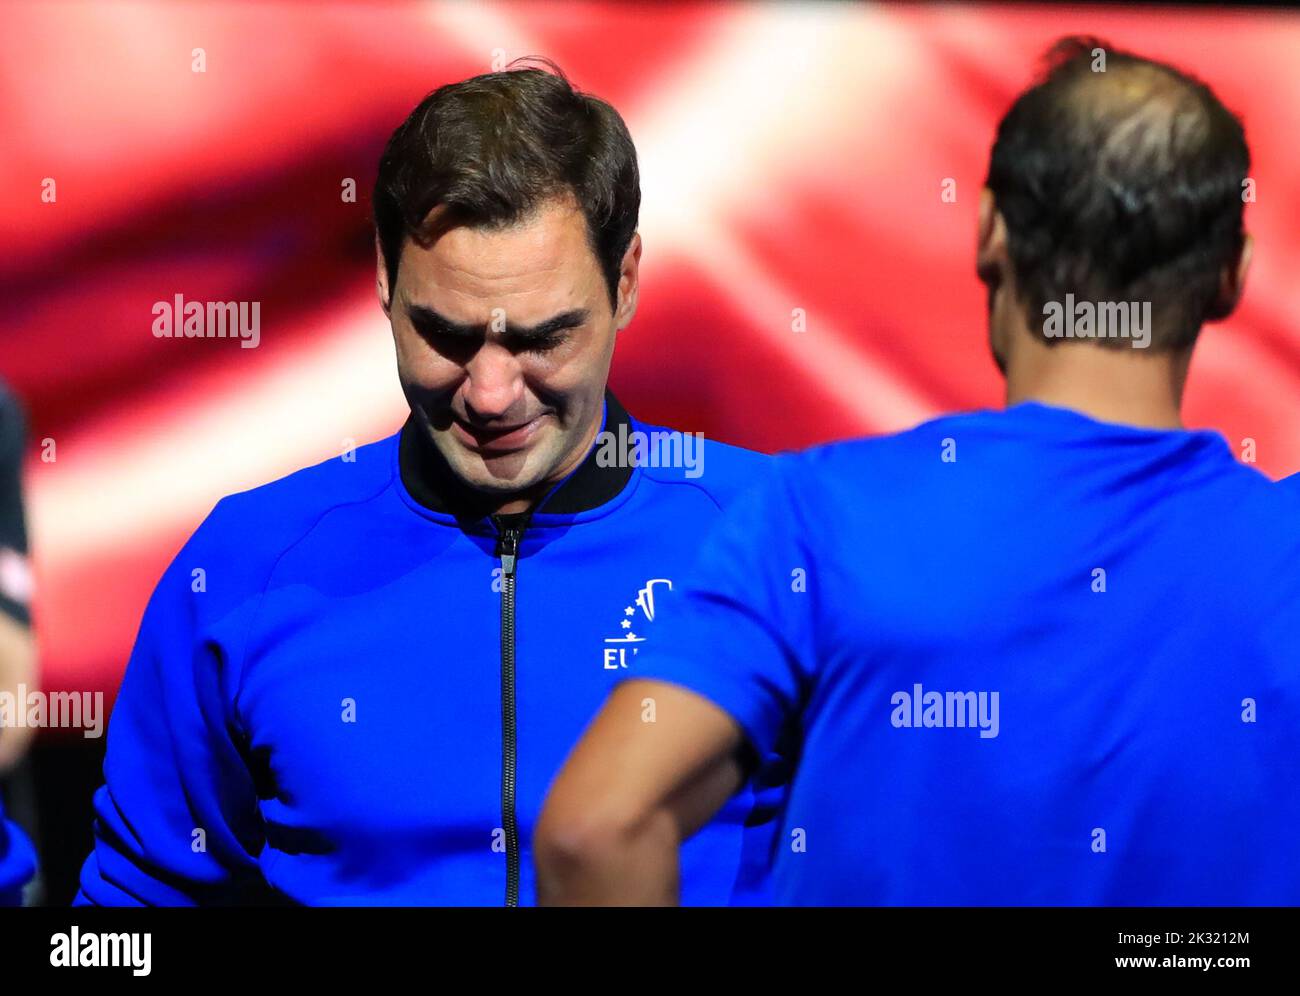 Londres, Royaume-Uni. 24th septembre 2022. Le joueur de l'équipe Europe Roger Federer (L) de Suisse réagit à la fin de son dernier match après avoir annoncé sa retraite à la coupe Laver à Londres, au Royaume-Uni, le 24 septembre 2022. Crédit : Li Ying/Xinhua/Alay Live News Banque D'Images